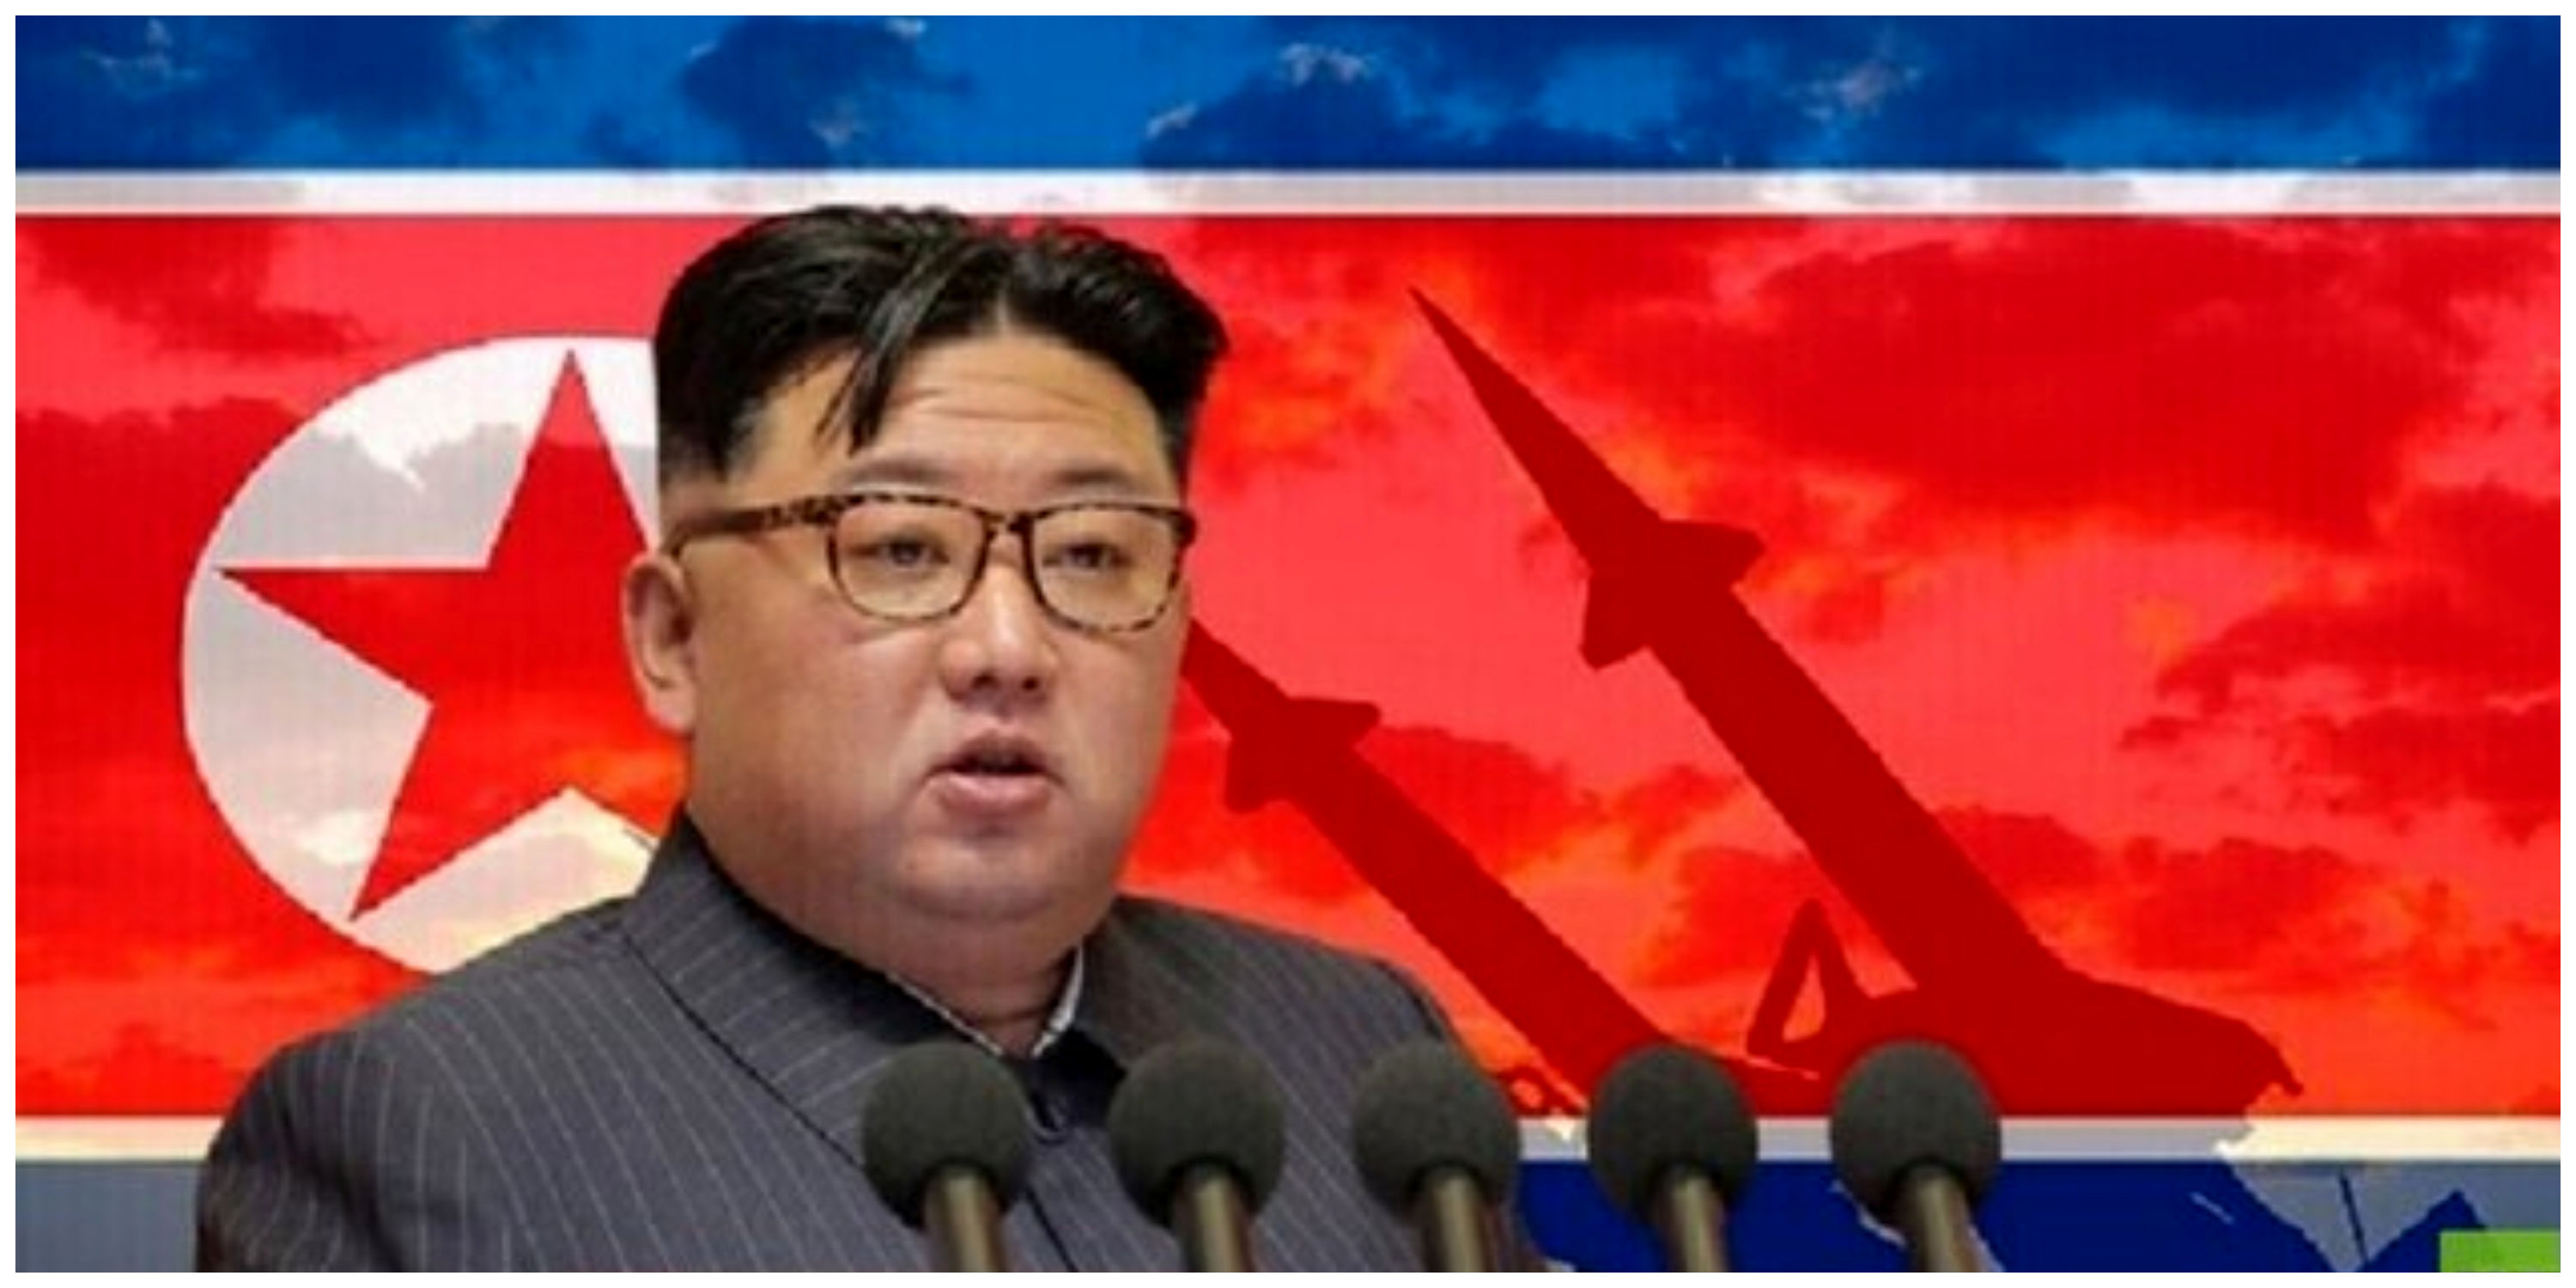 اعلام آماده باش نظامی در کره شمالی!